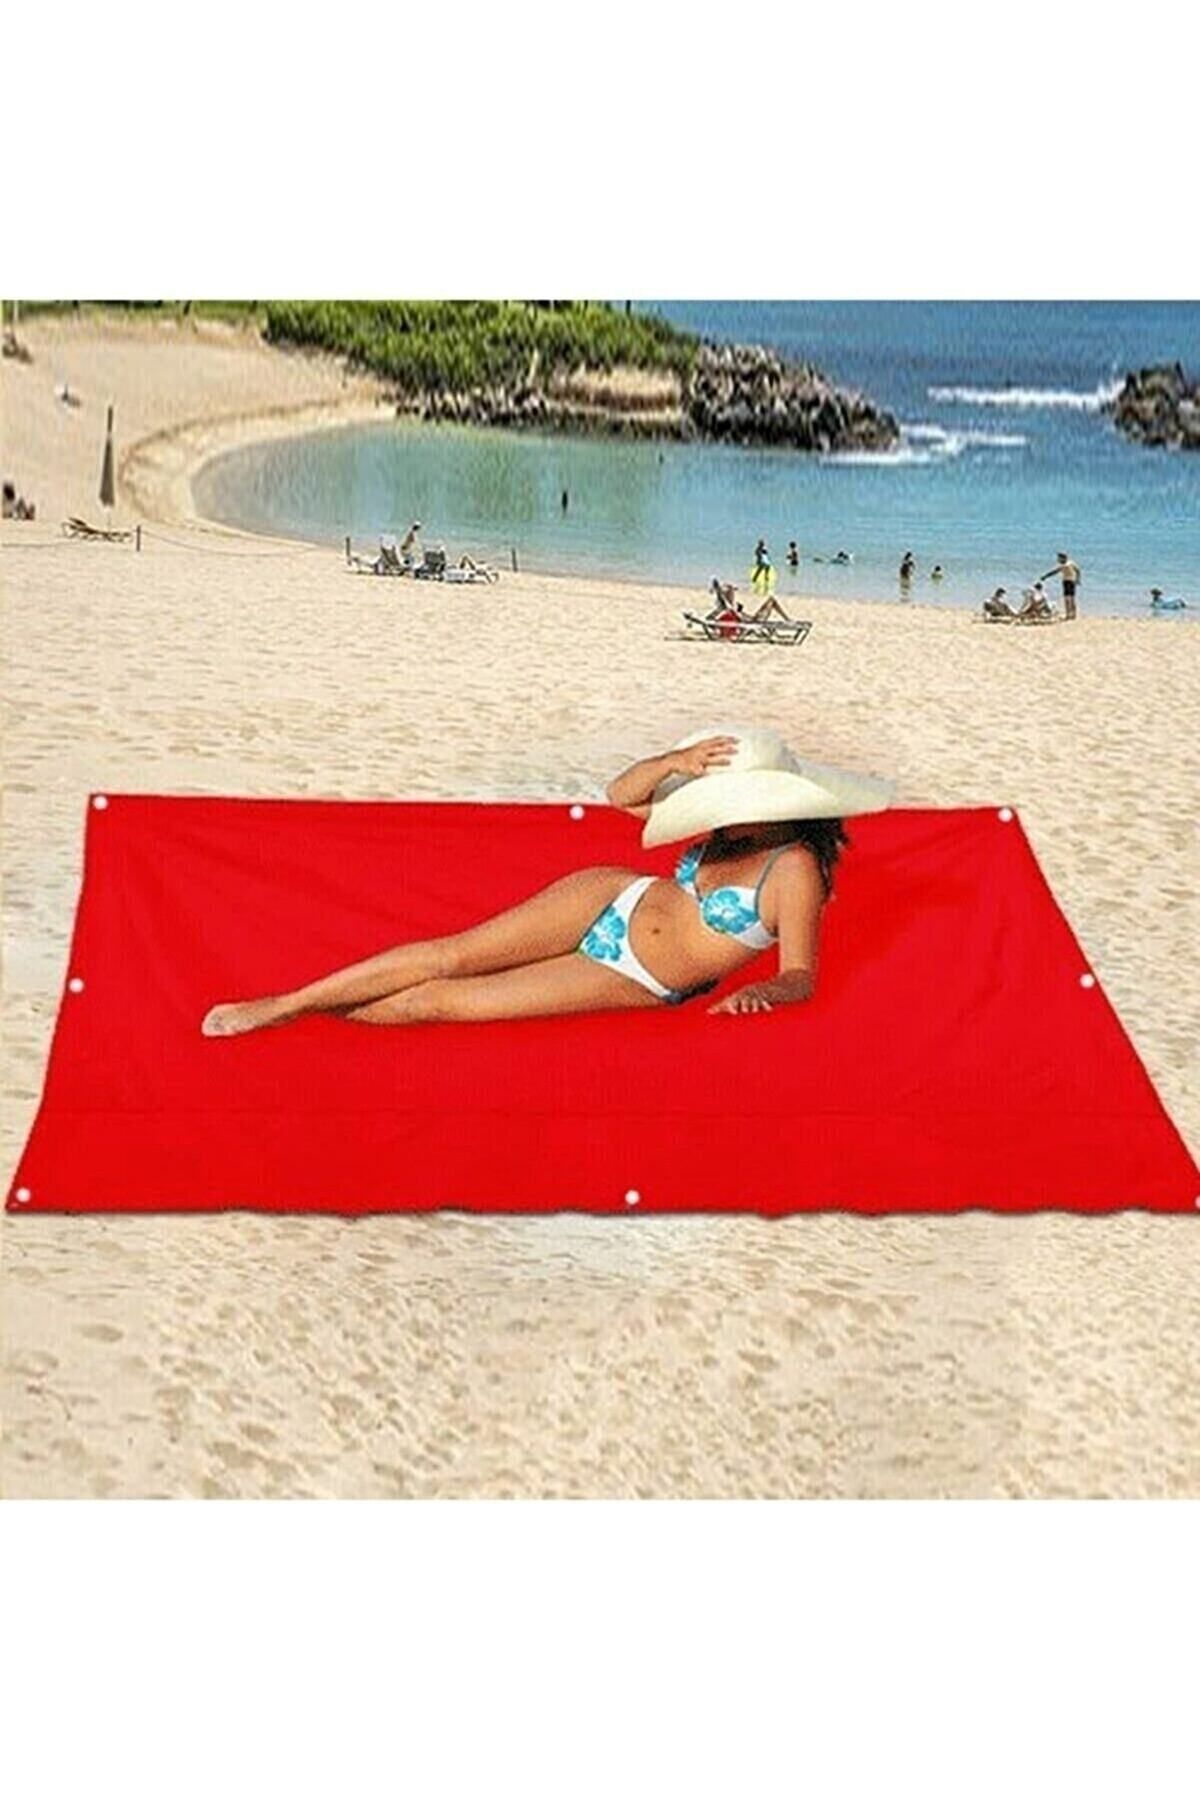 Bundeba Katlanır Kamp Çadırı Güneşlik Gölgelik Tente Branda Piknik Örtüsü Kamp Çadır Plaj Yer Matı